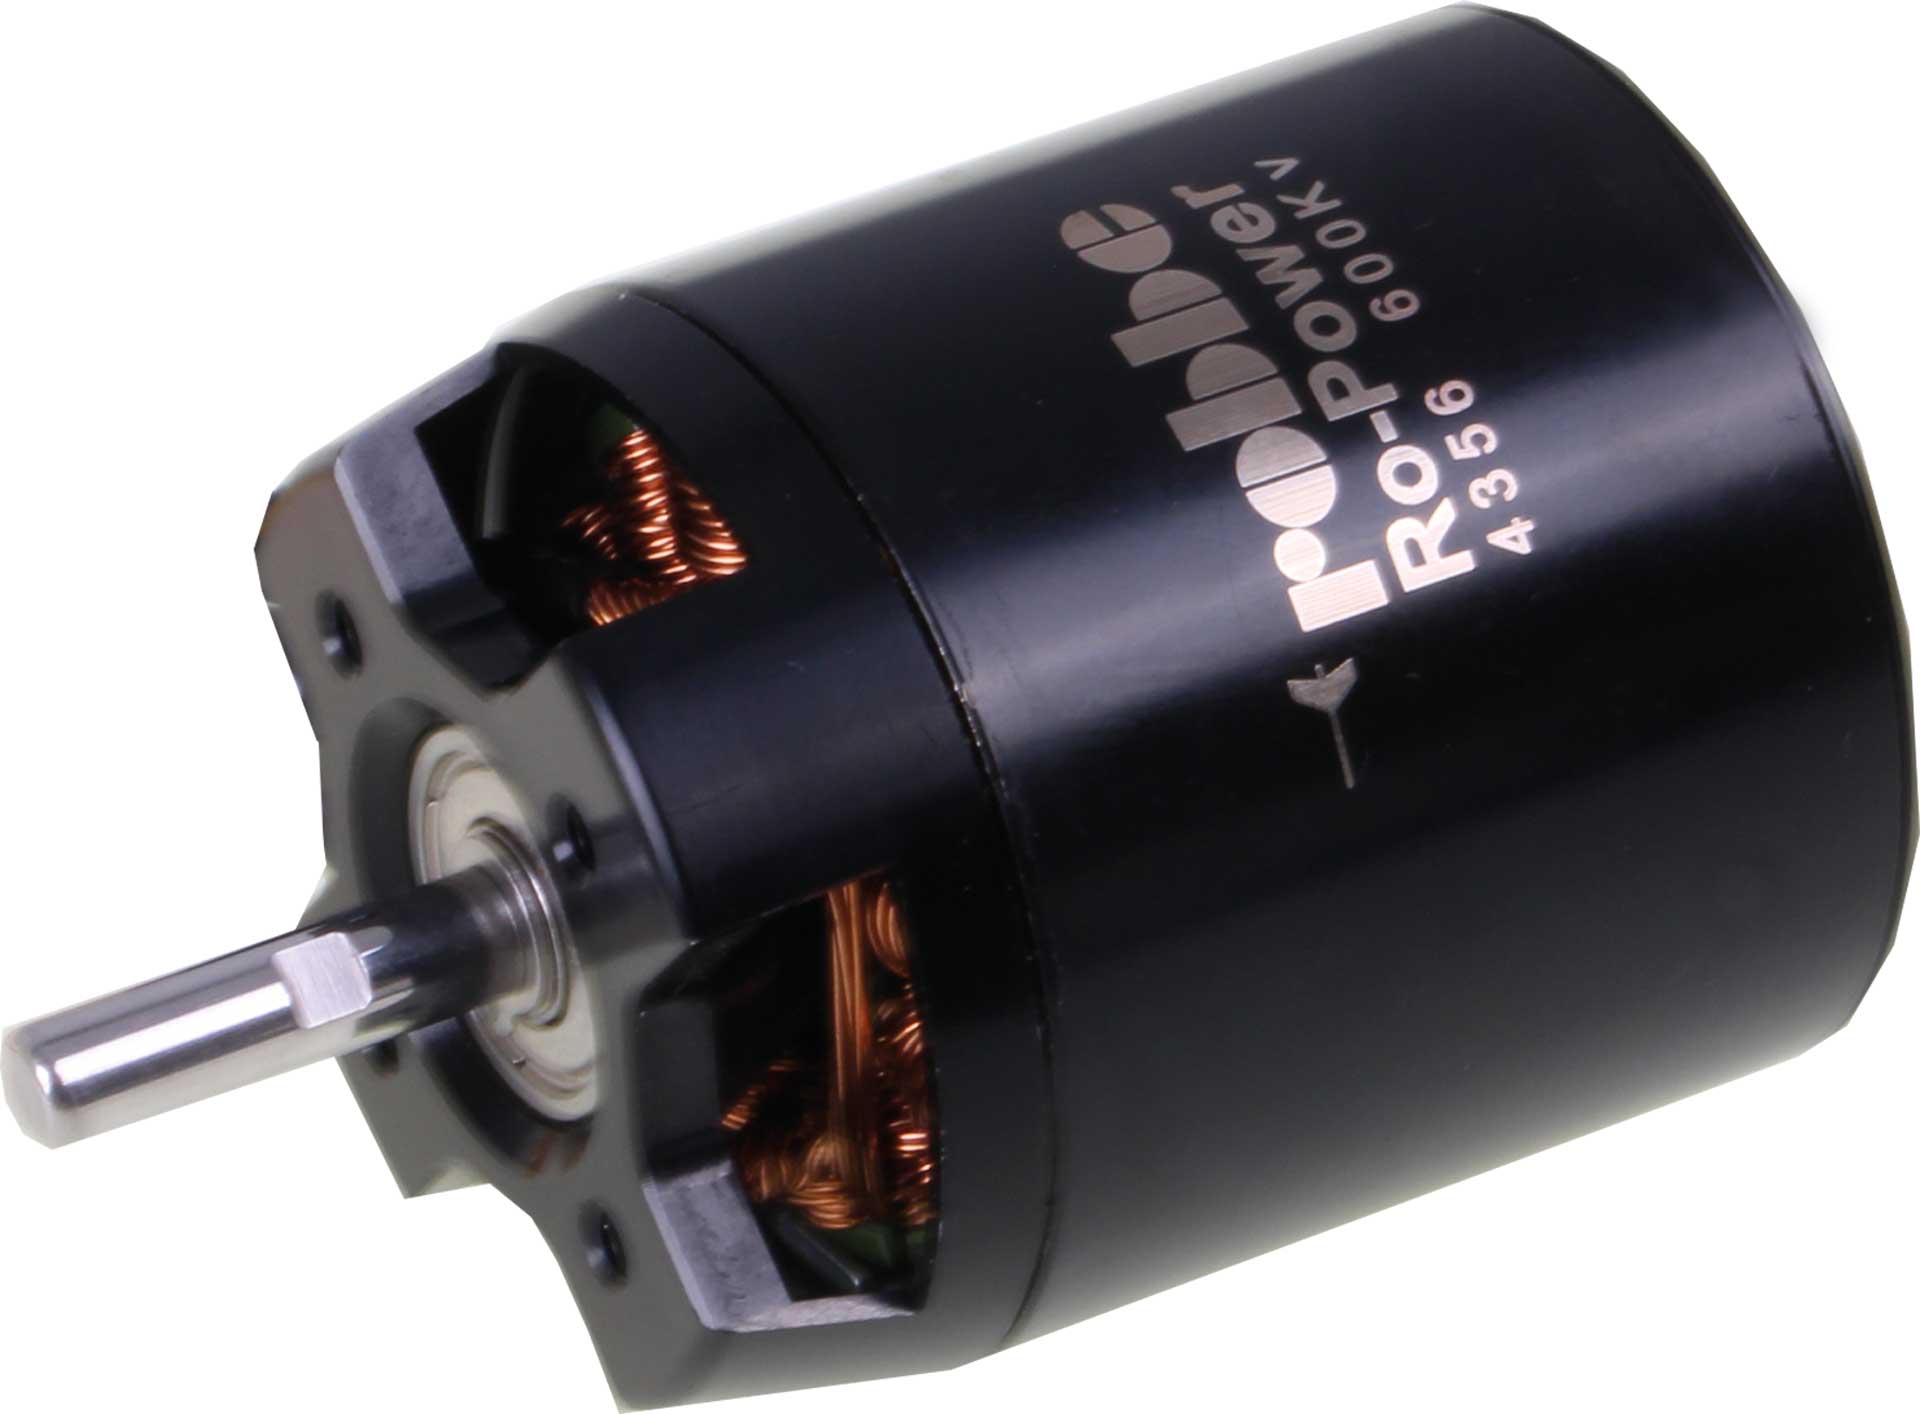 Robbe Modellsport RO-POWER TORQUE 4356 600 K/V Brushless Motor